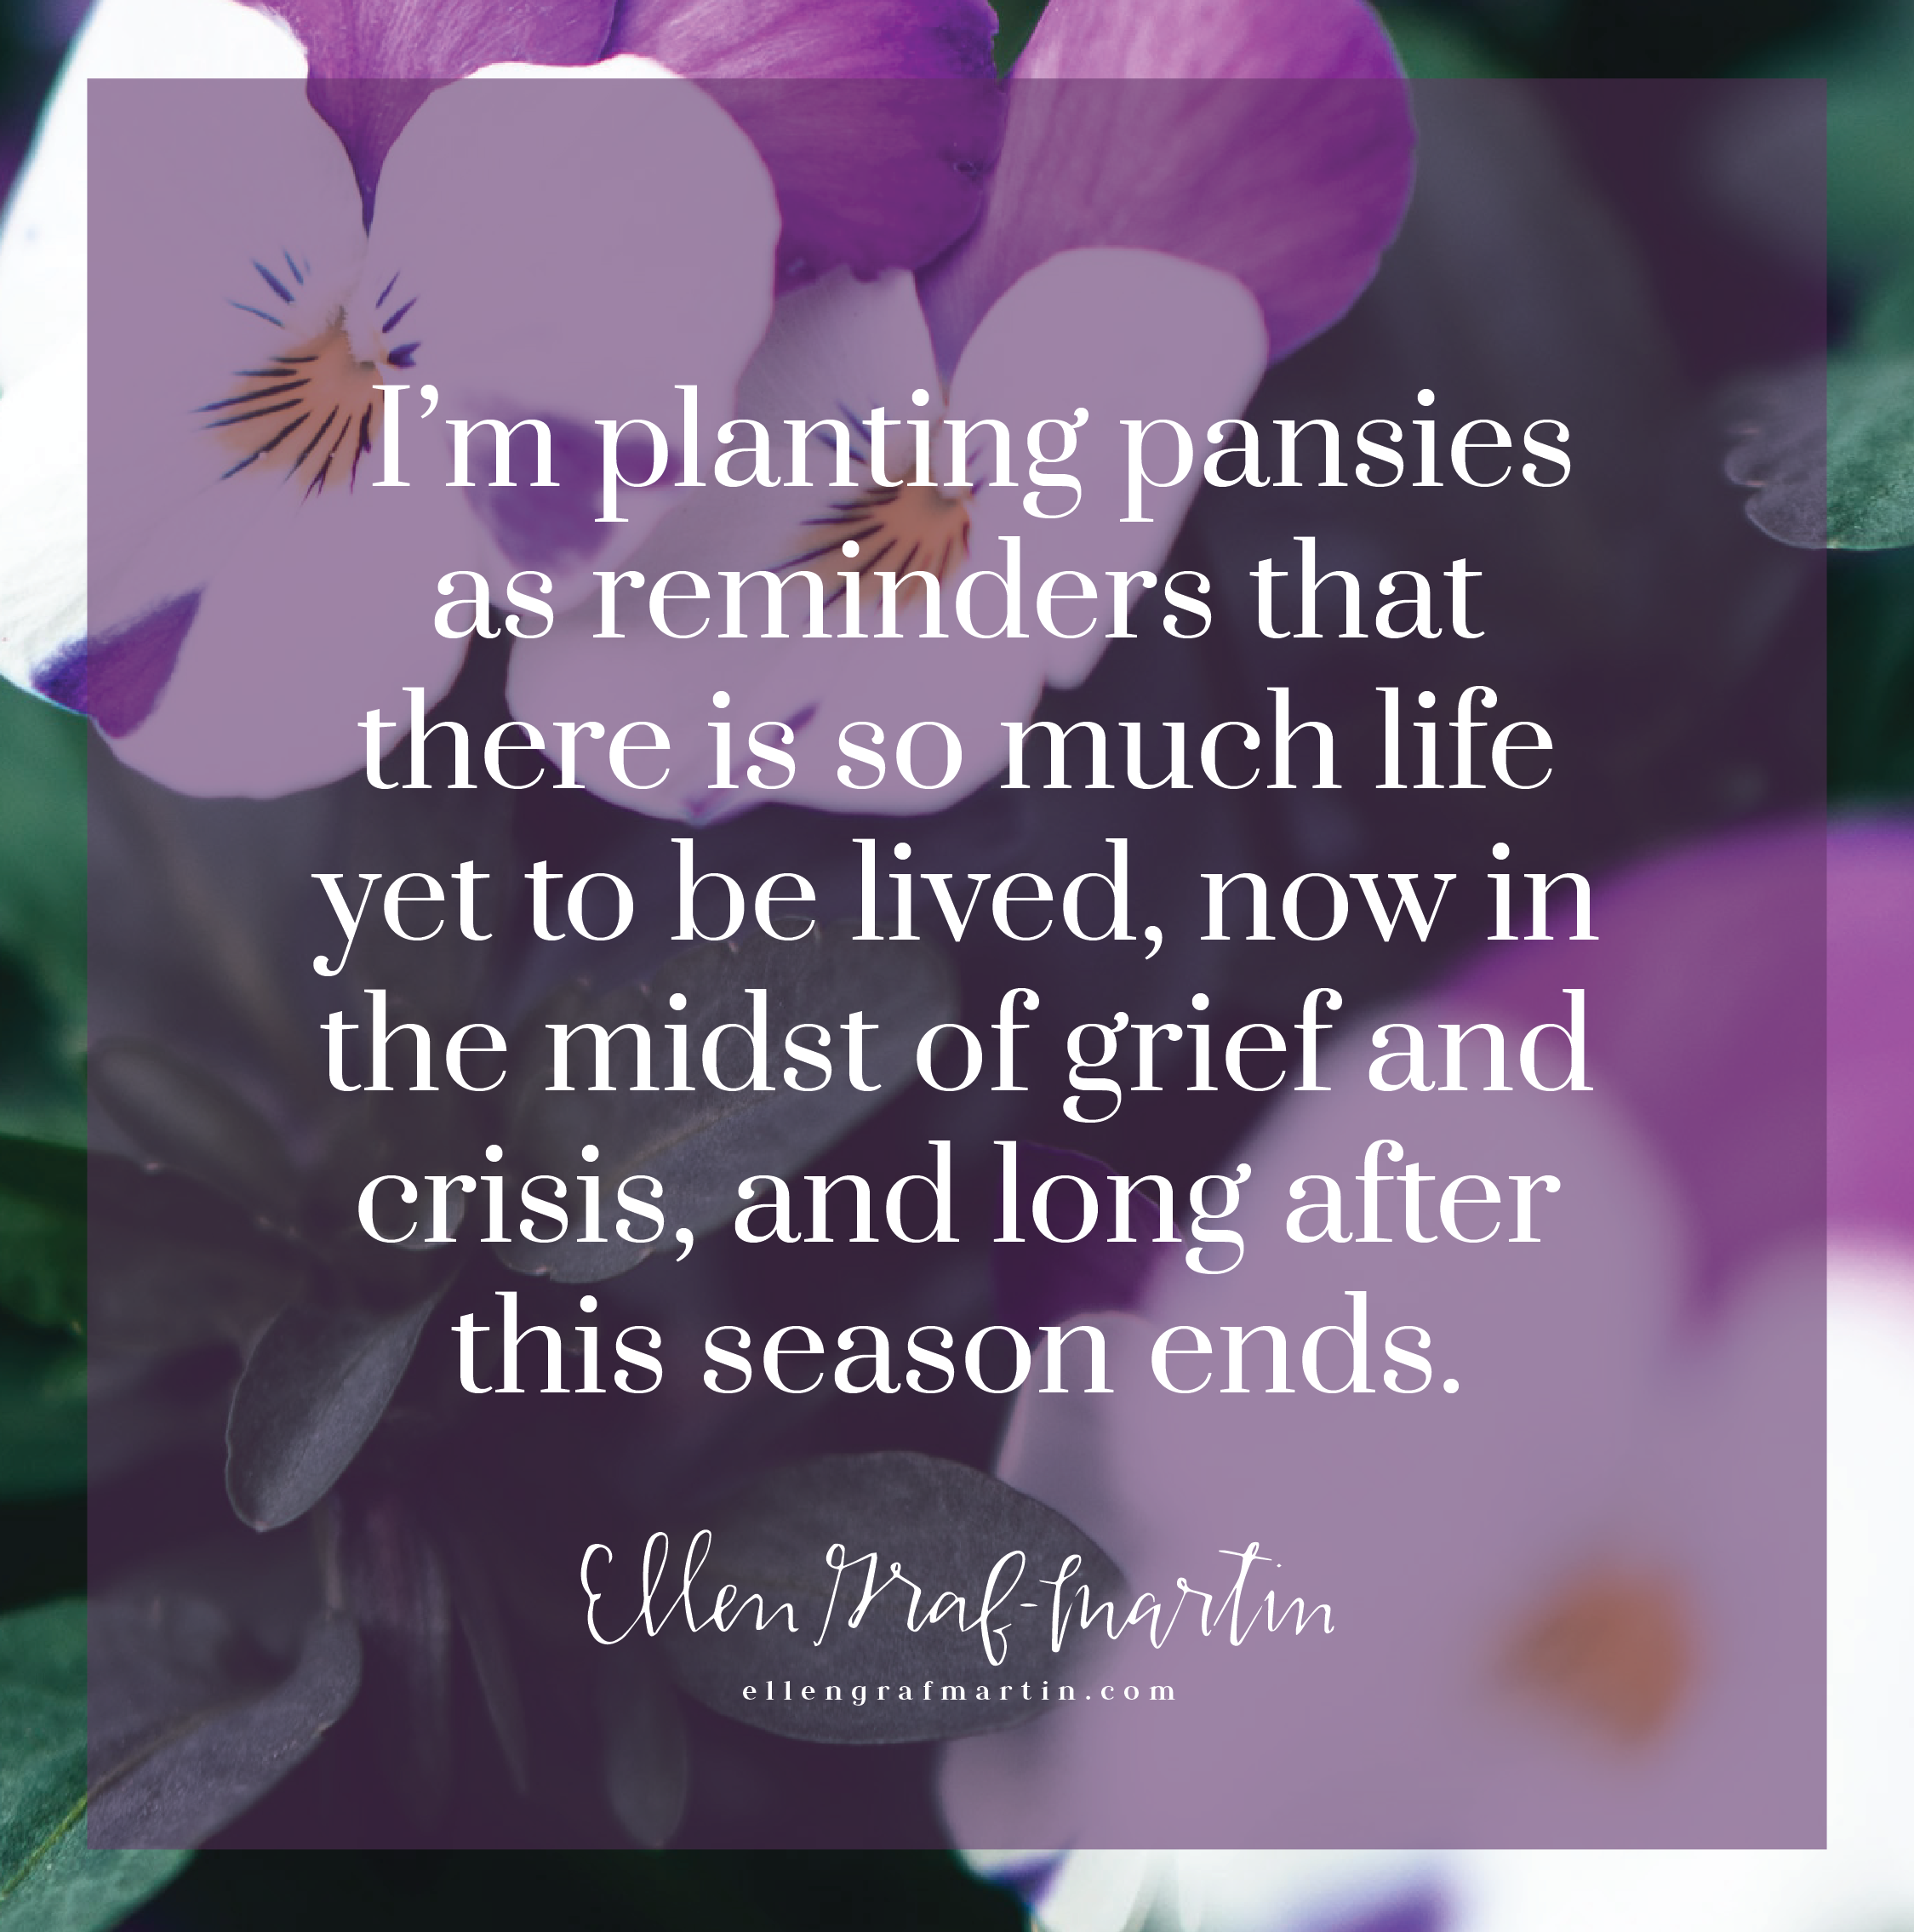 On Planting Pansies